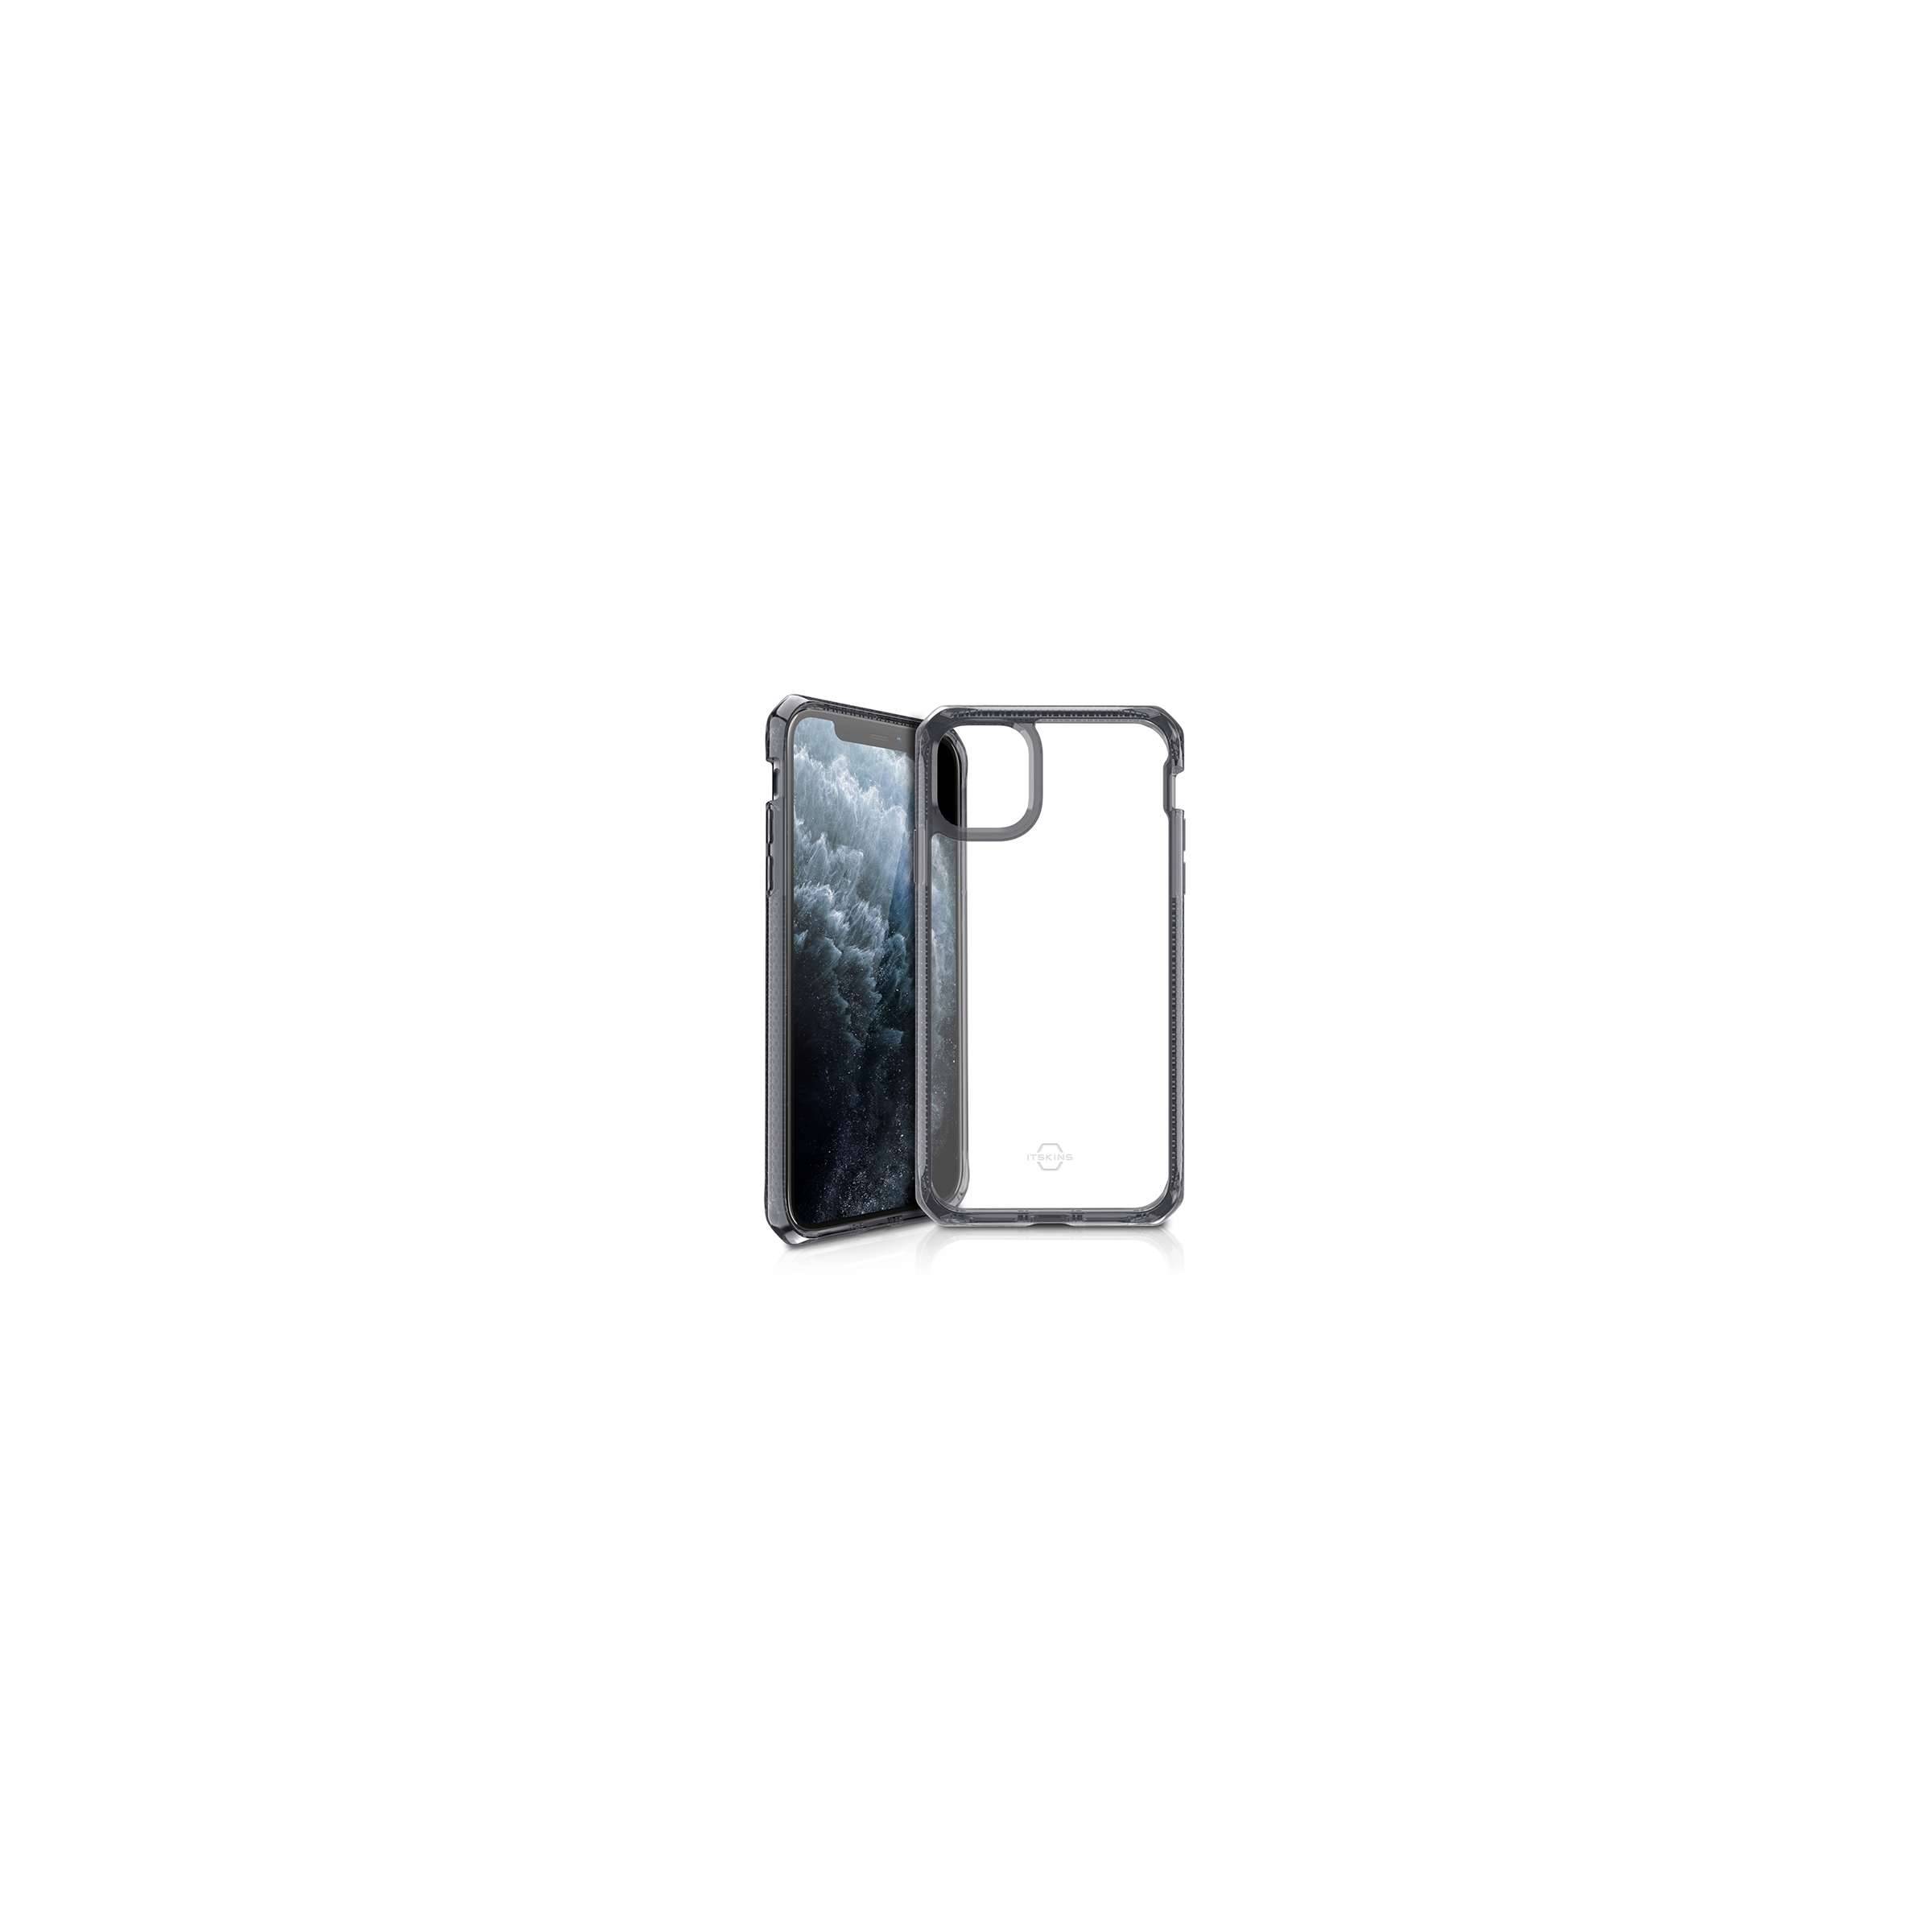 Bilde av Hybrid Clear Cover Itskins Til Iphone 11 Pro Max